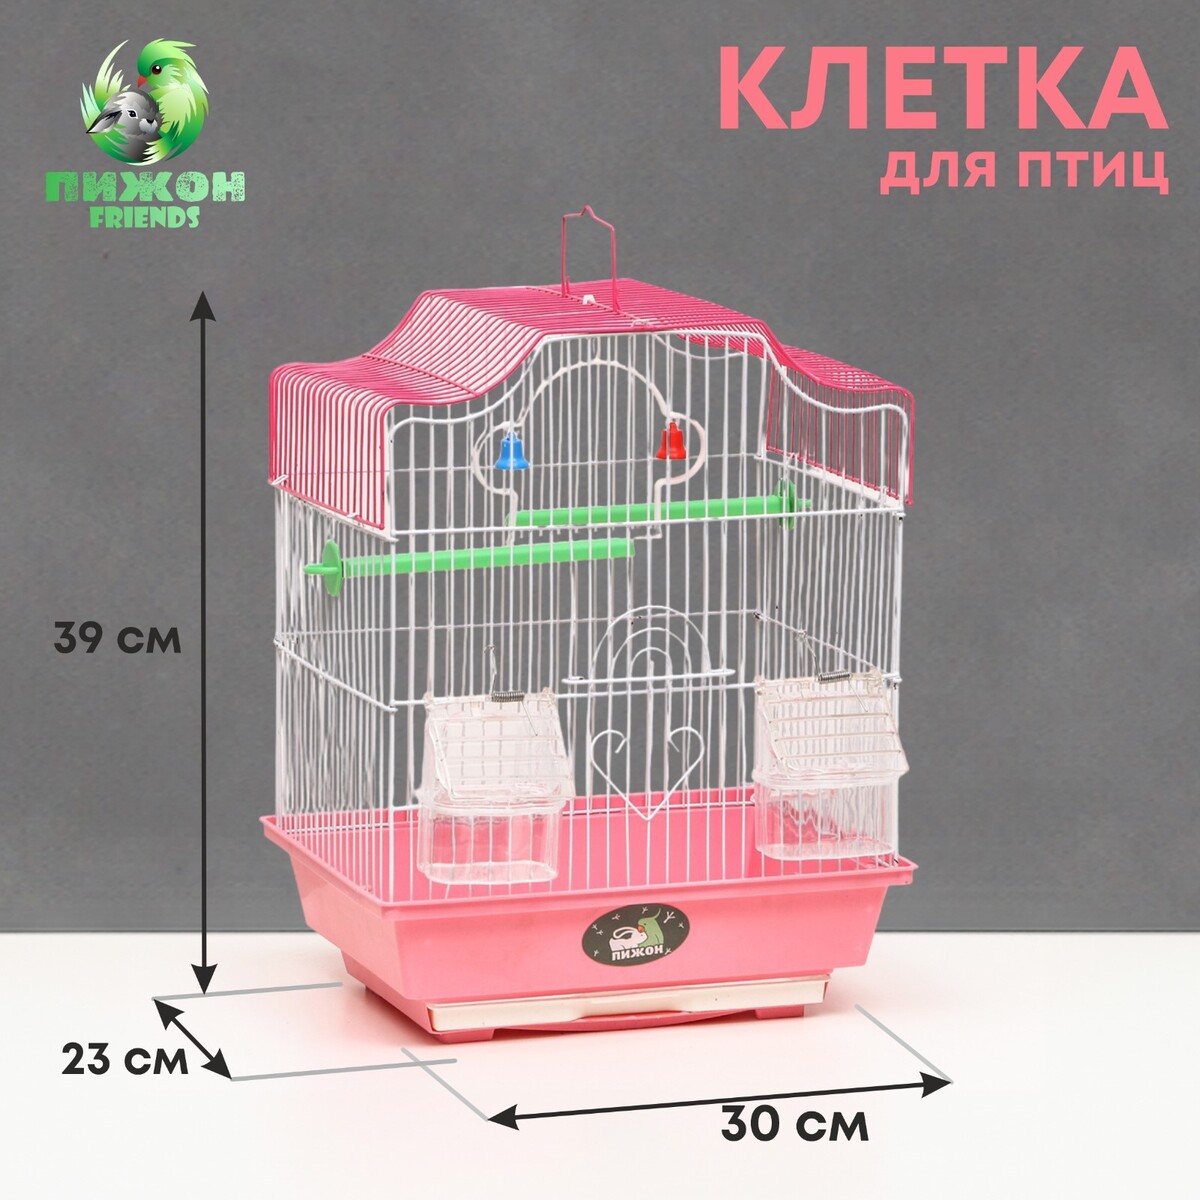 Клетка для птиц укомплектованная bd-1/4f, 30 х 23 х 39 см, розовая Пижон